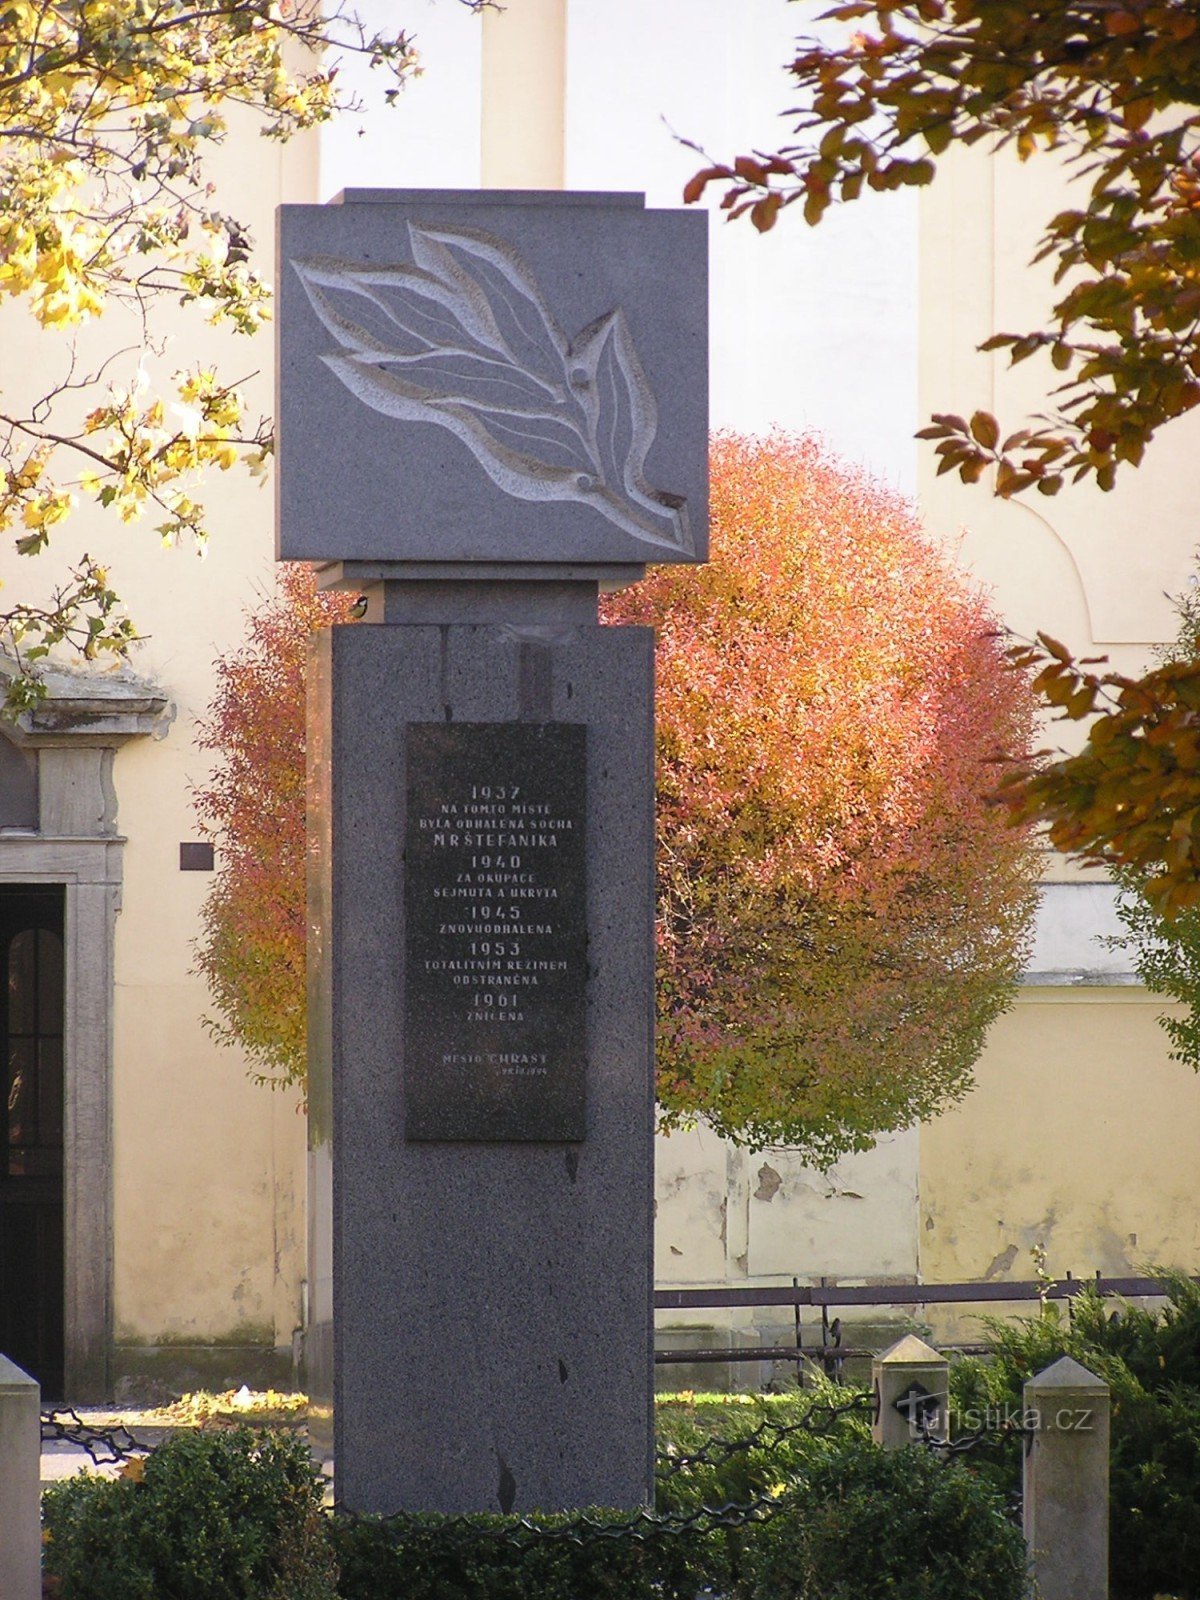 Đài tưởng niệm các nạn nhân của chiến tranh